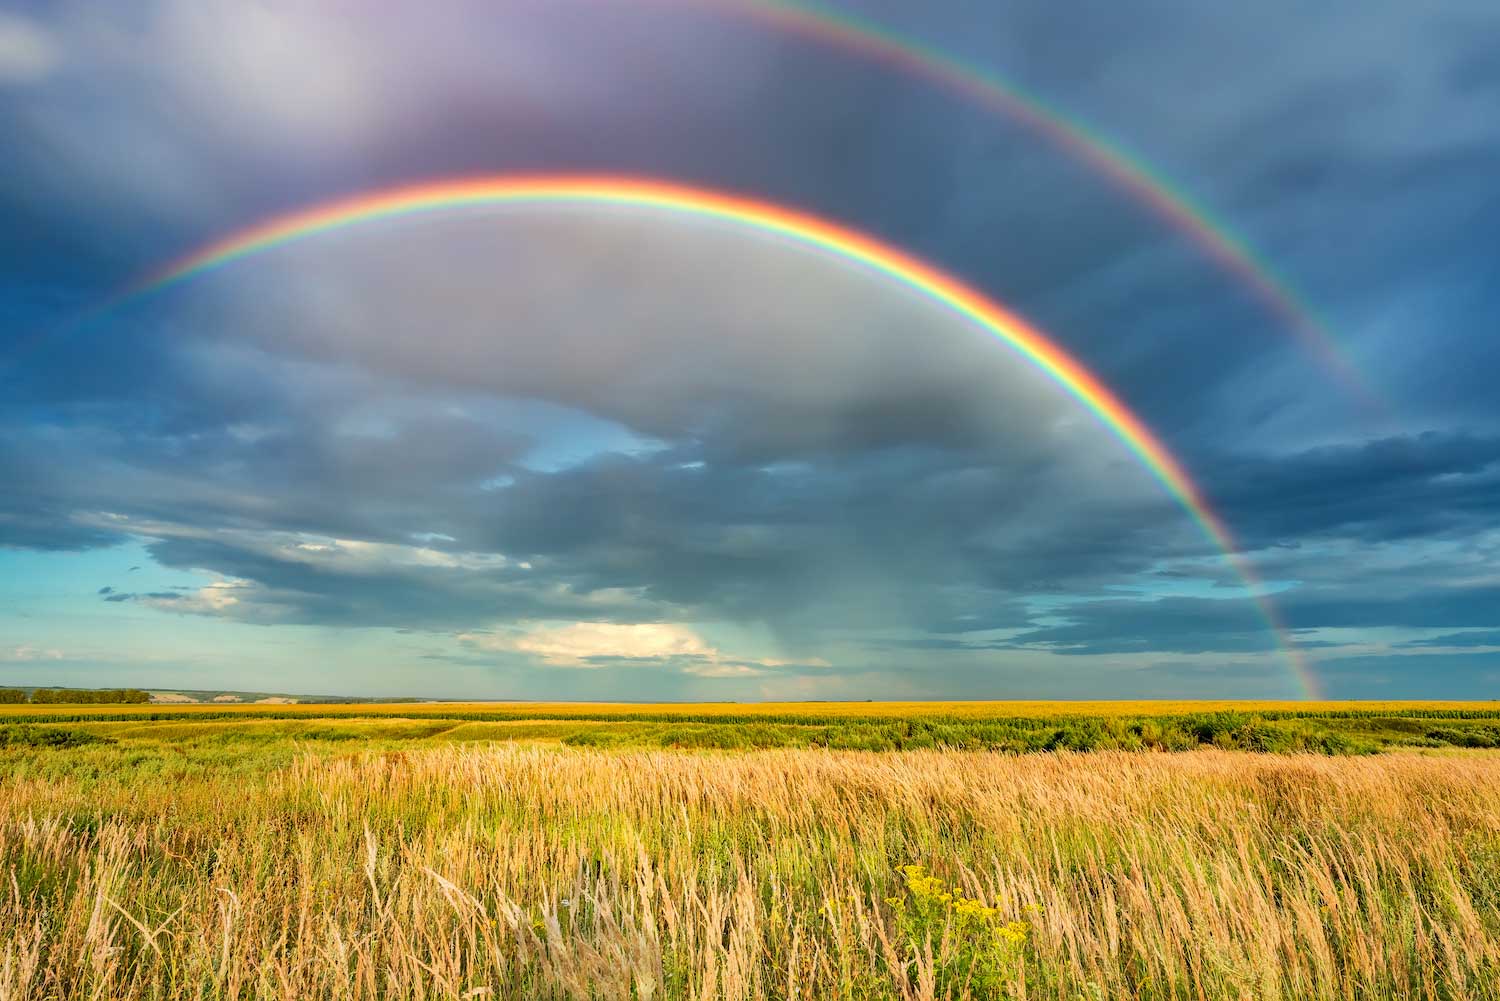 A double rainbow over a prairie.